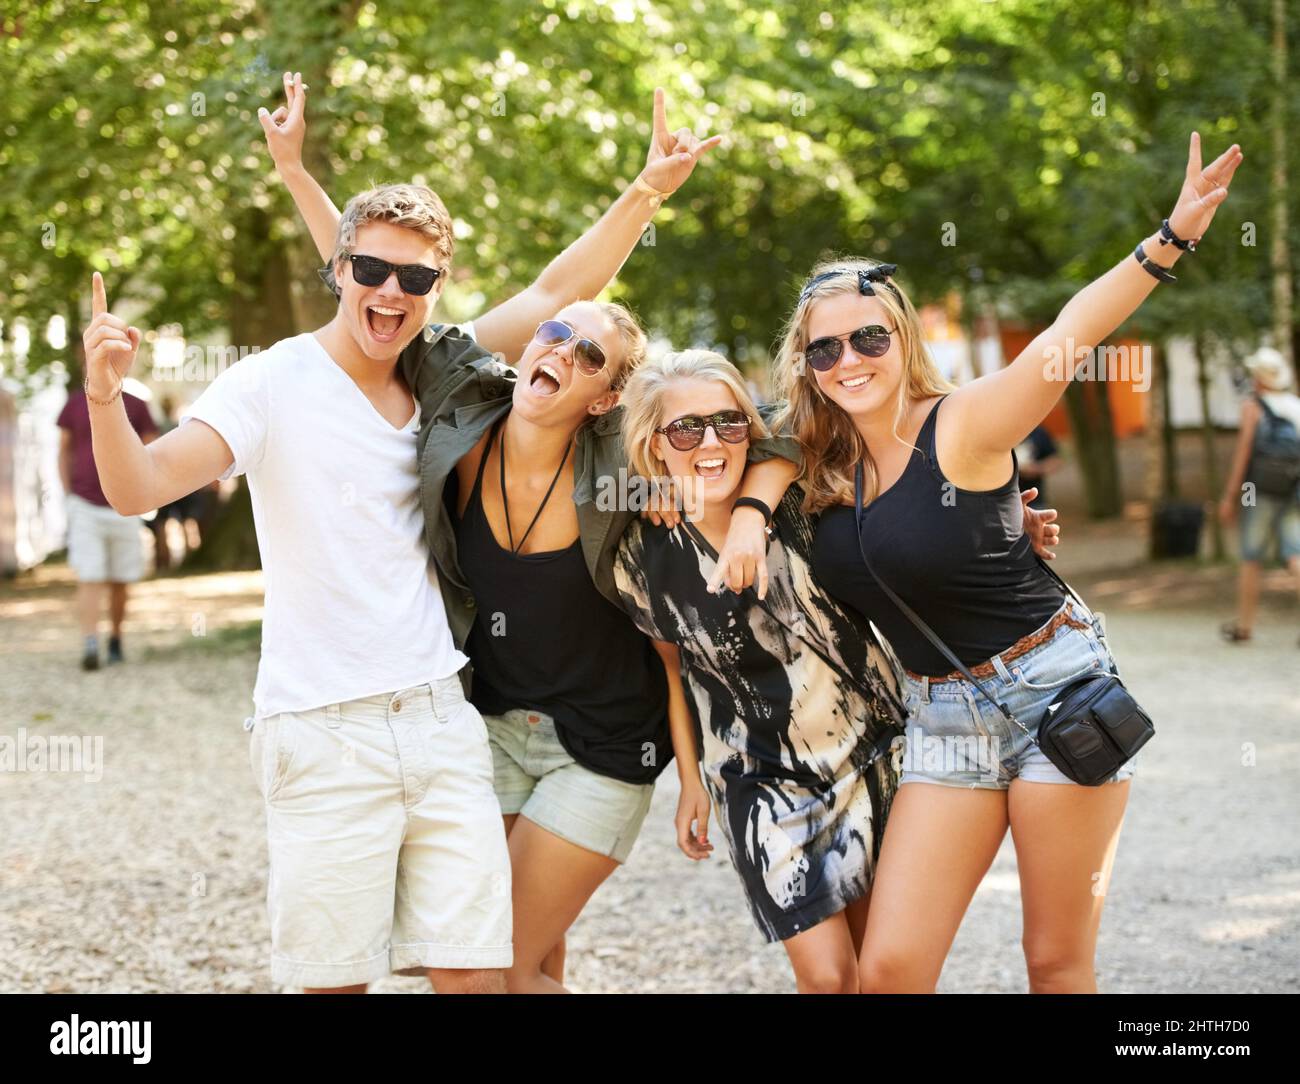 Libera di festa al festival musicale. Quattro amici che festeggiano e festeggiano in un festival musicale. Foto Stock